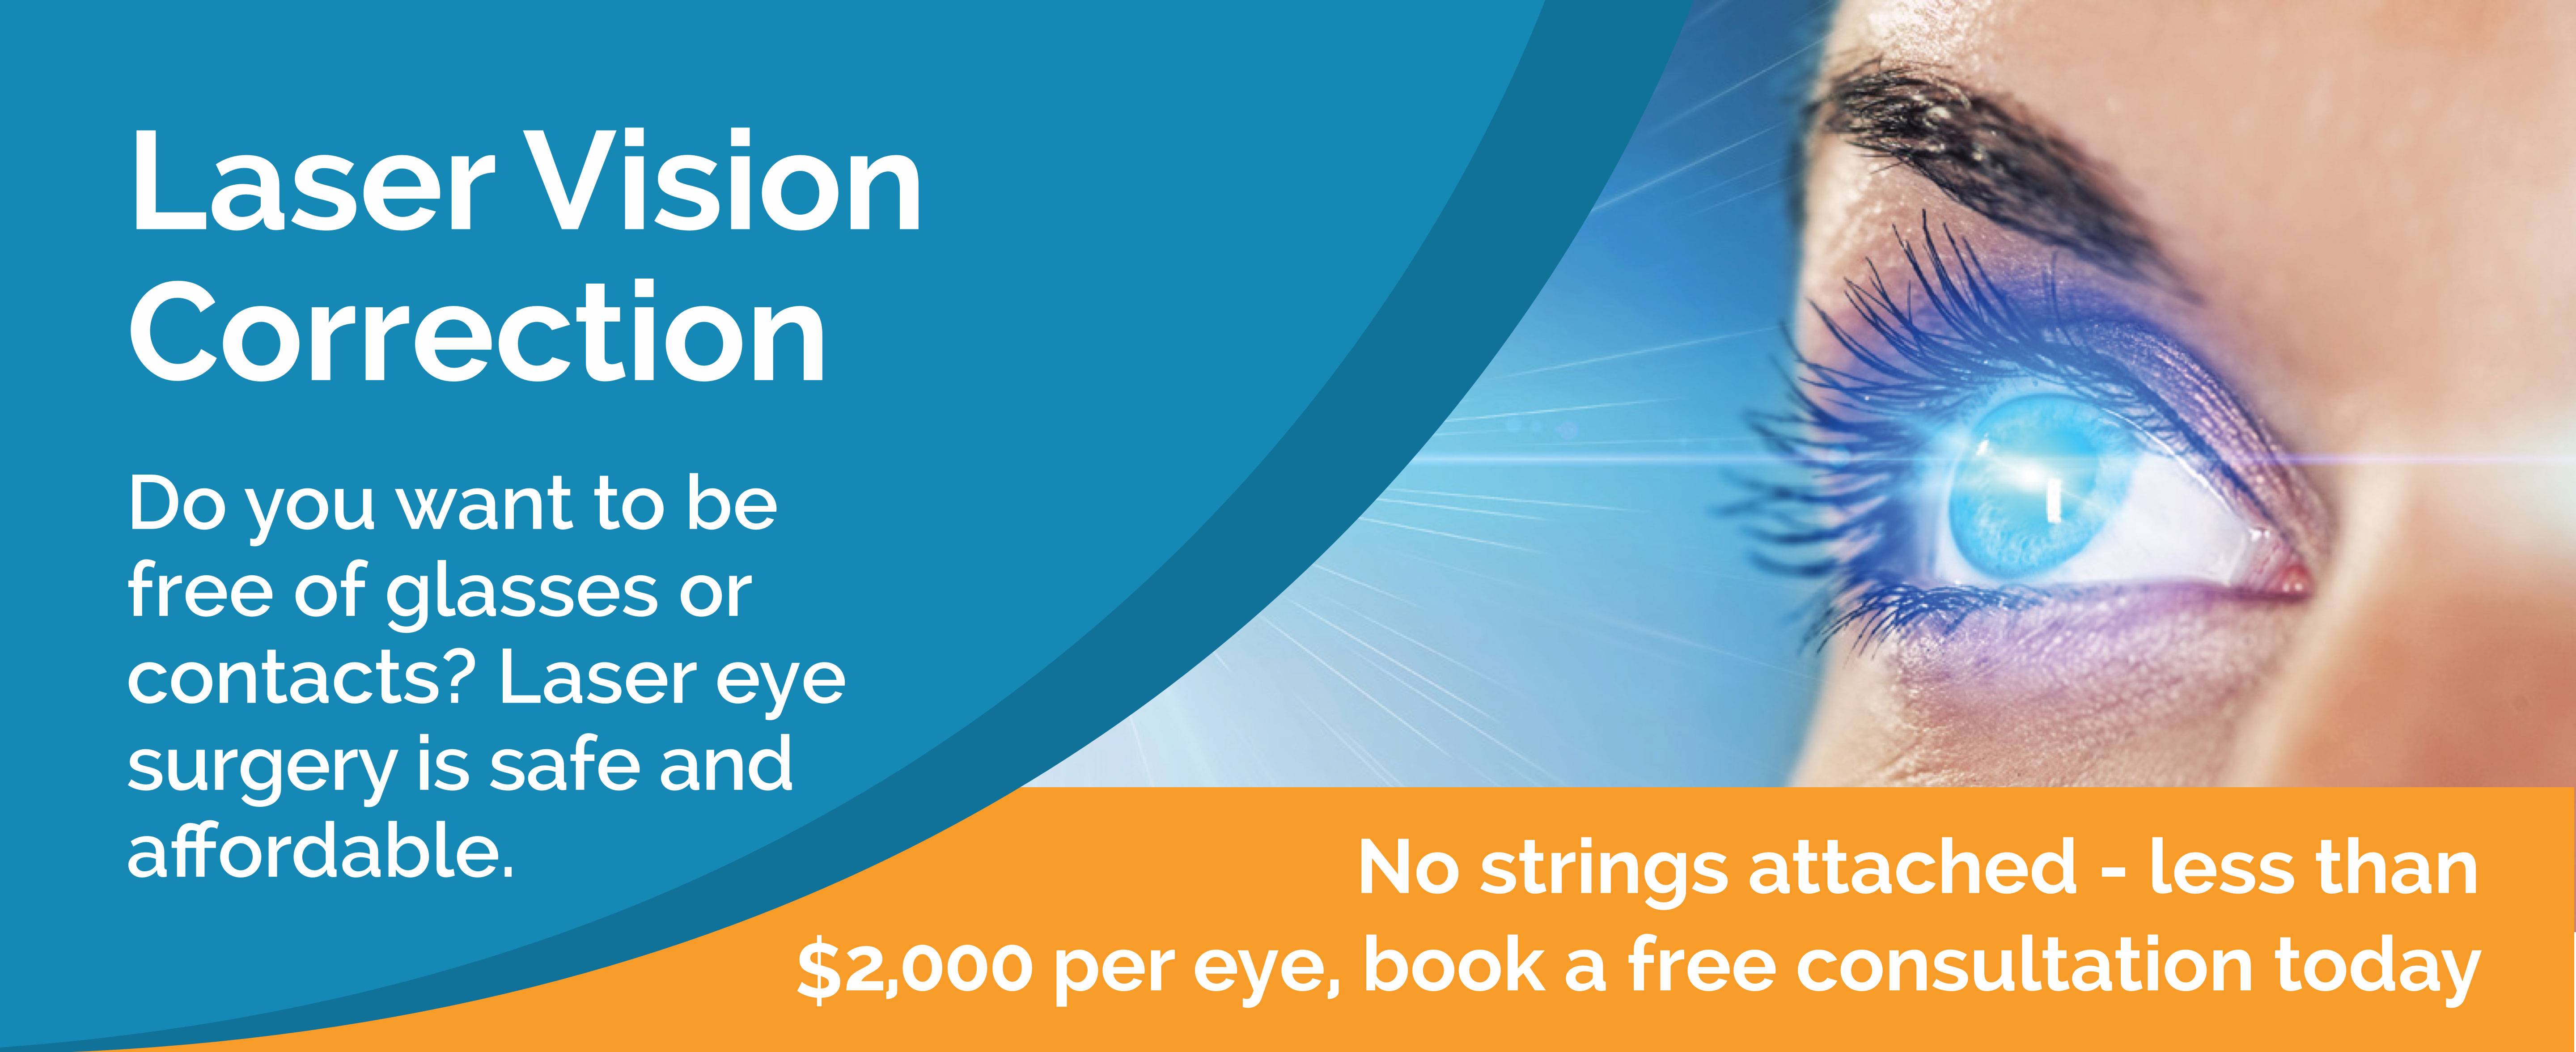 Очки-тренажеры laser vision (лазер вижн) - описание, показания к применению и отзывы